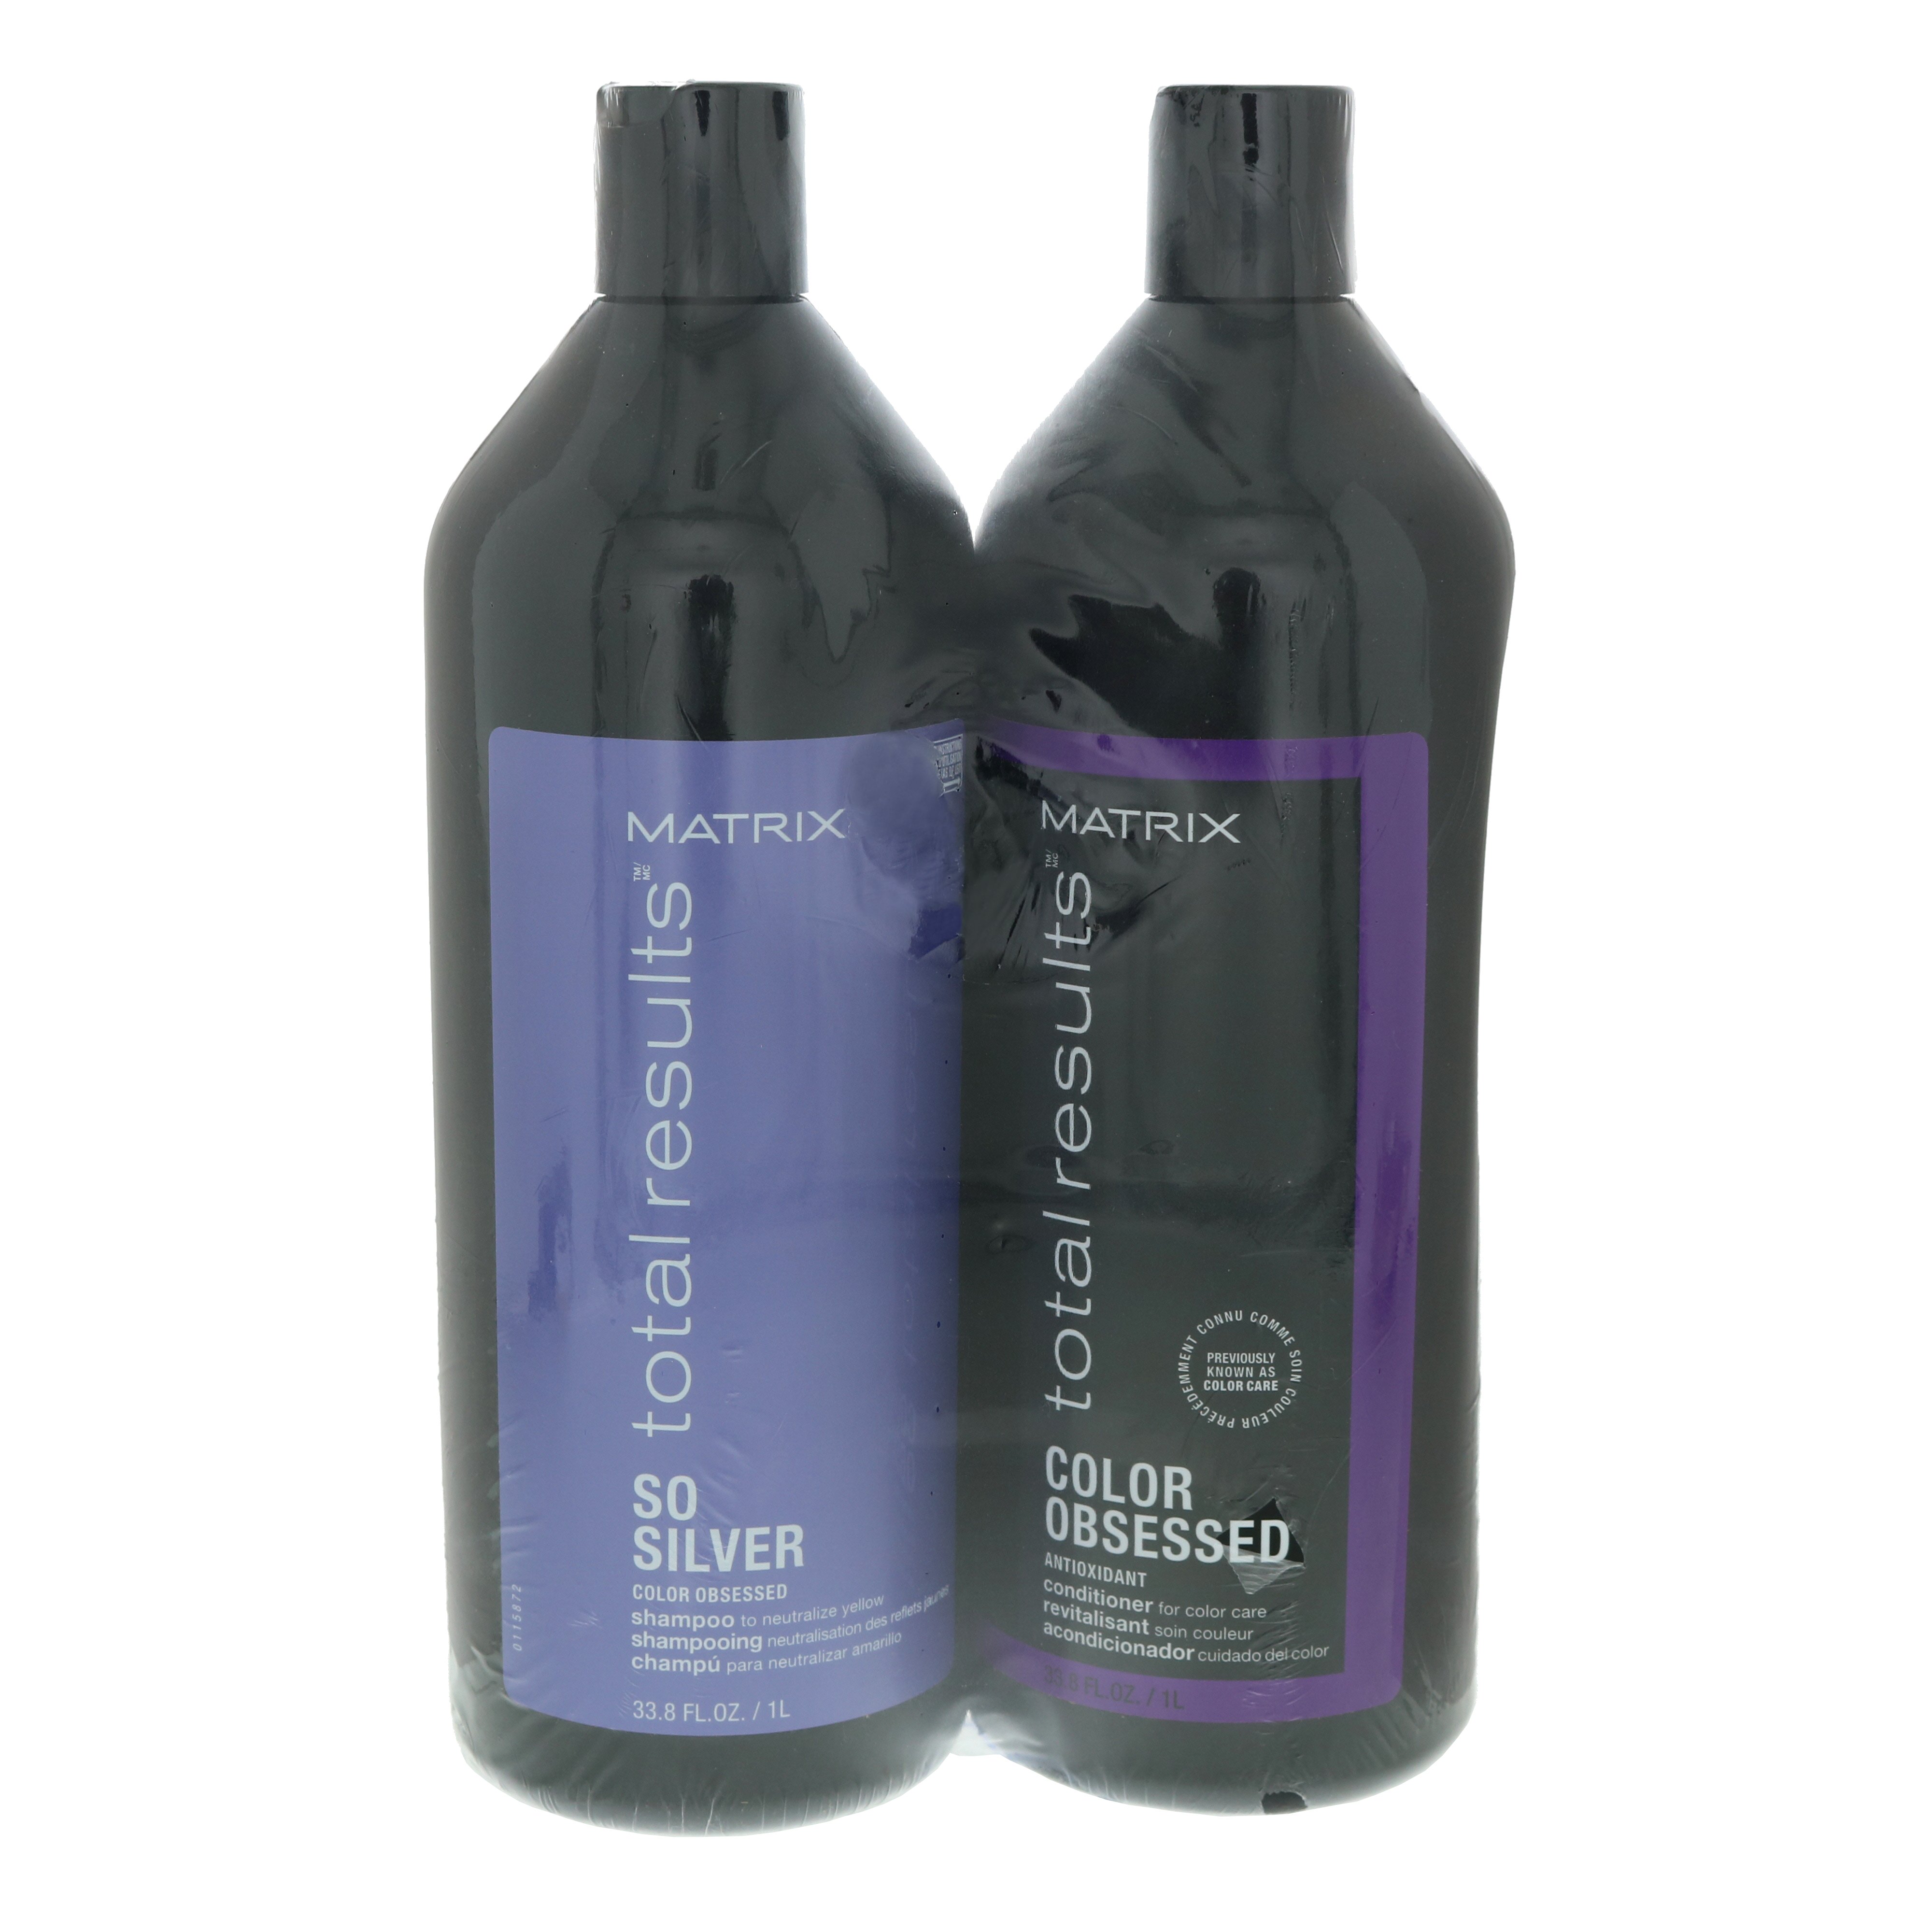 Matrix Results So Silver Purple & Conditioner Duo - Shop Shampoo & Conditioner at H-E-B